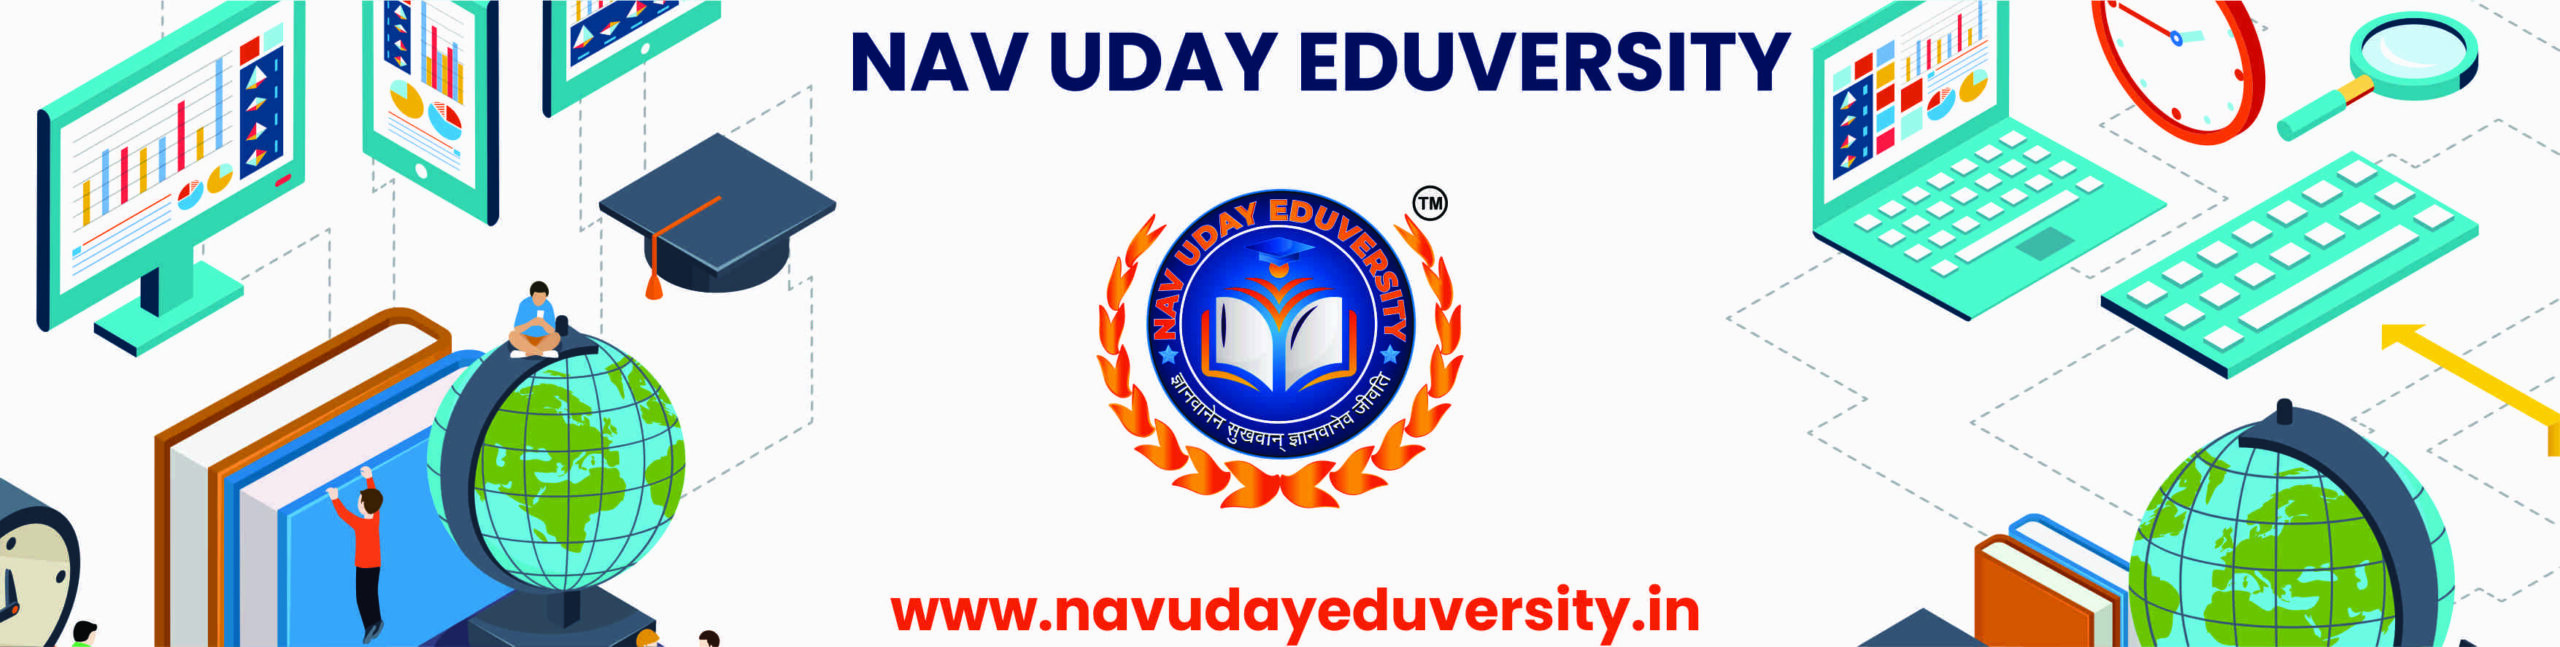 Nav Uday Eduversity